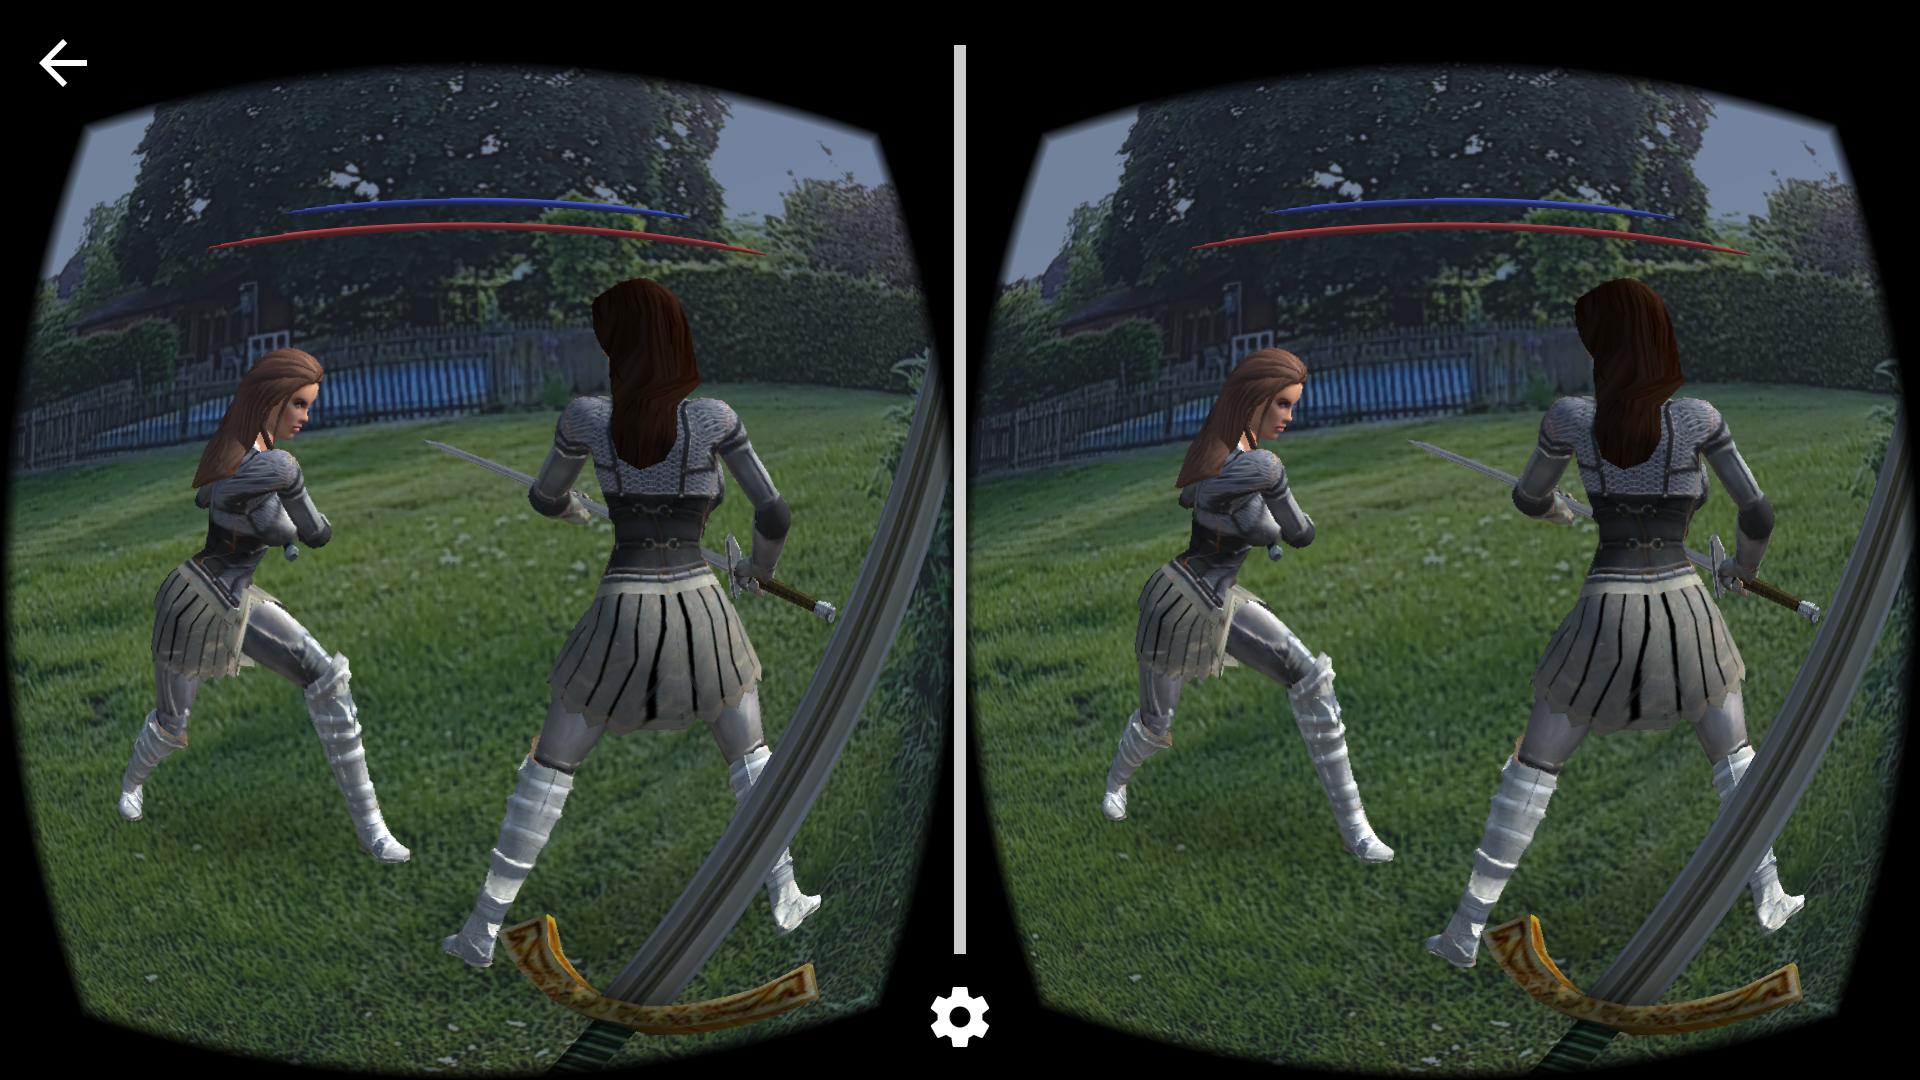 Vr sword. VR игра с мечами. VR мечи. VR Арена игра с мечами. VR игра Sword Gaim.